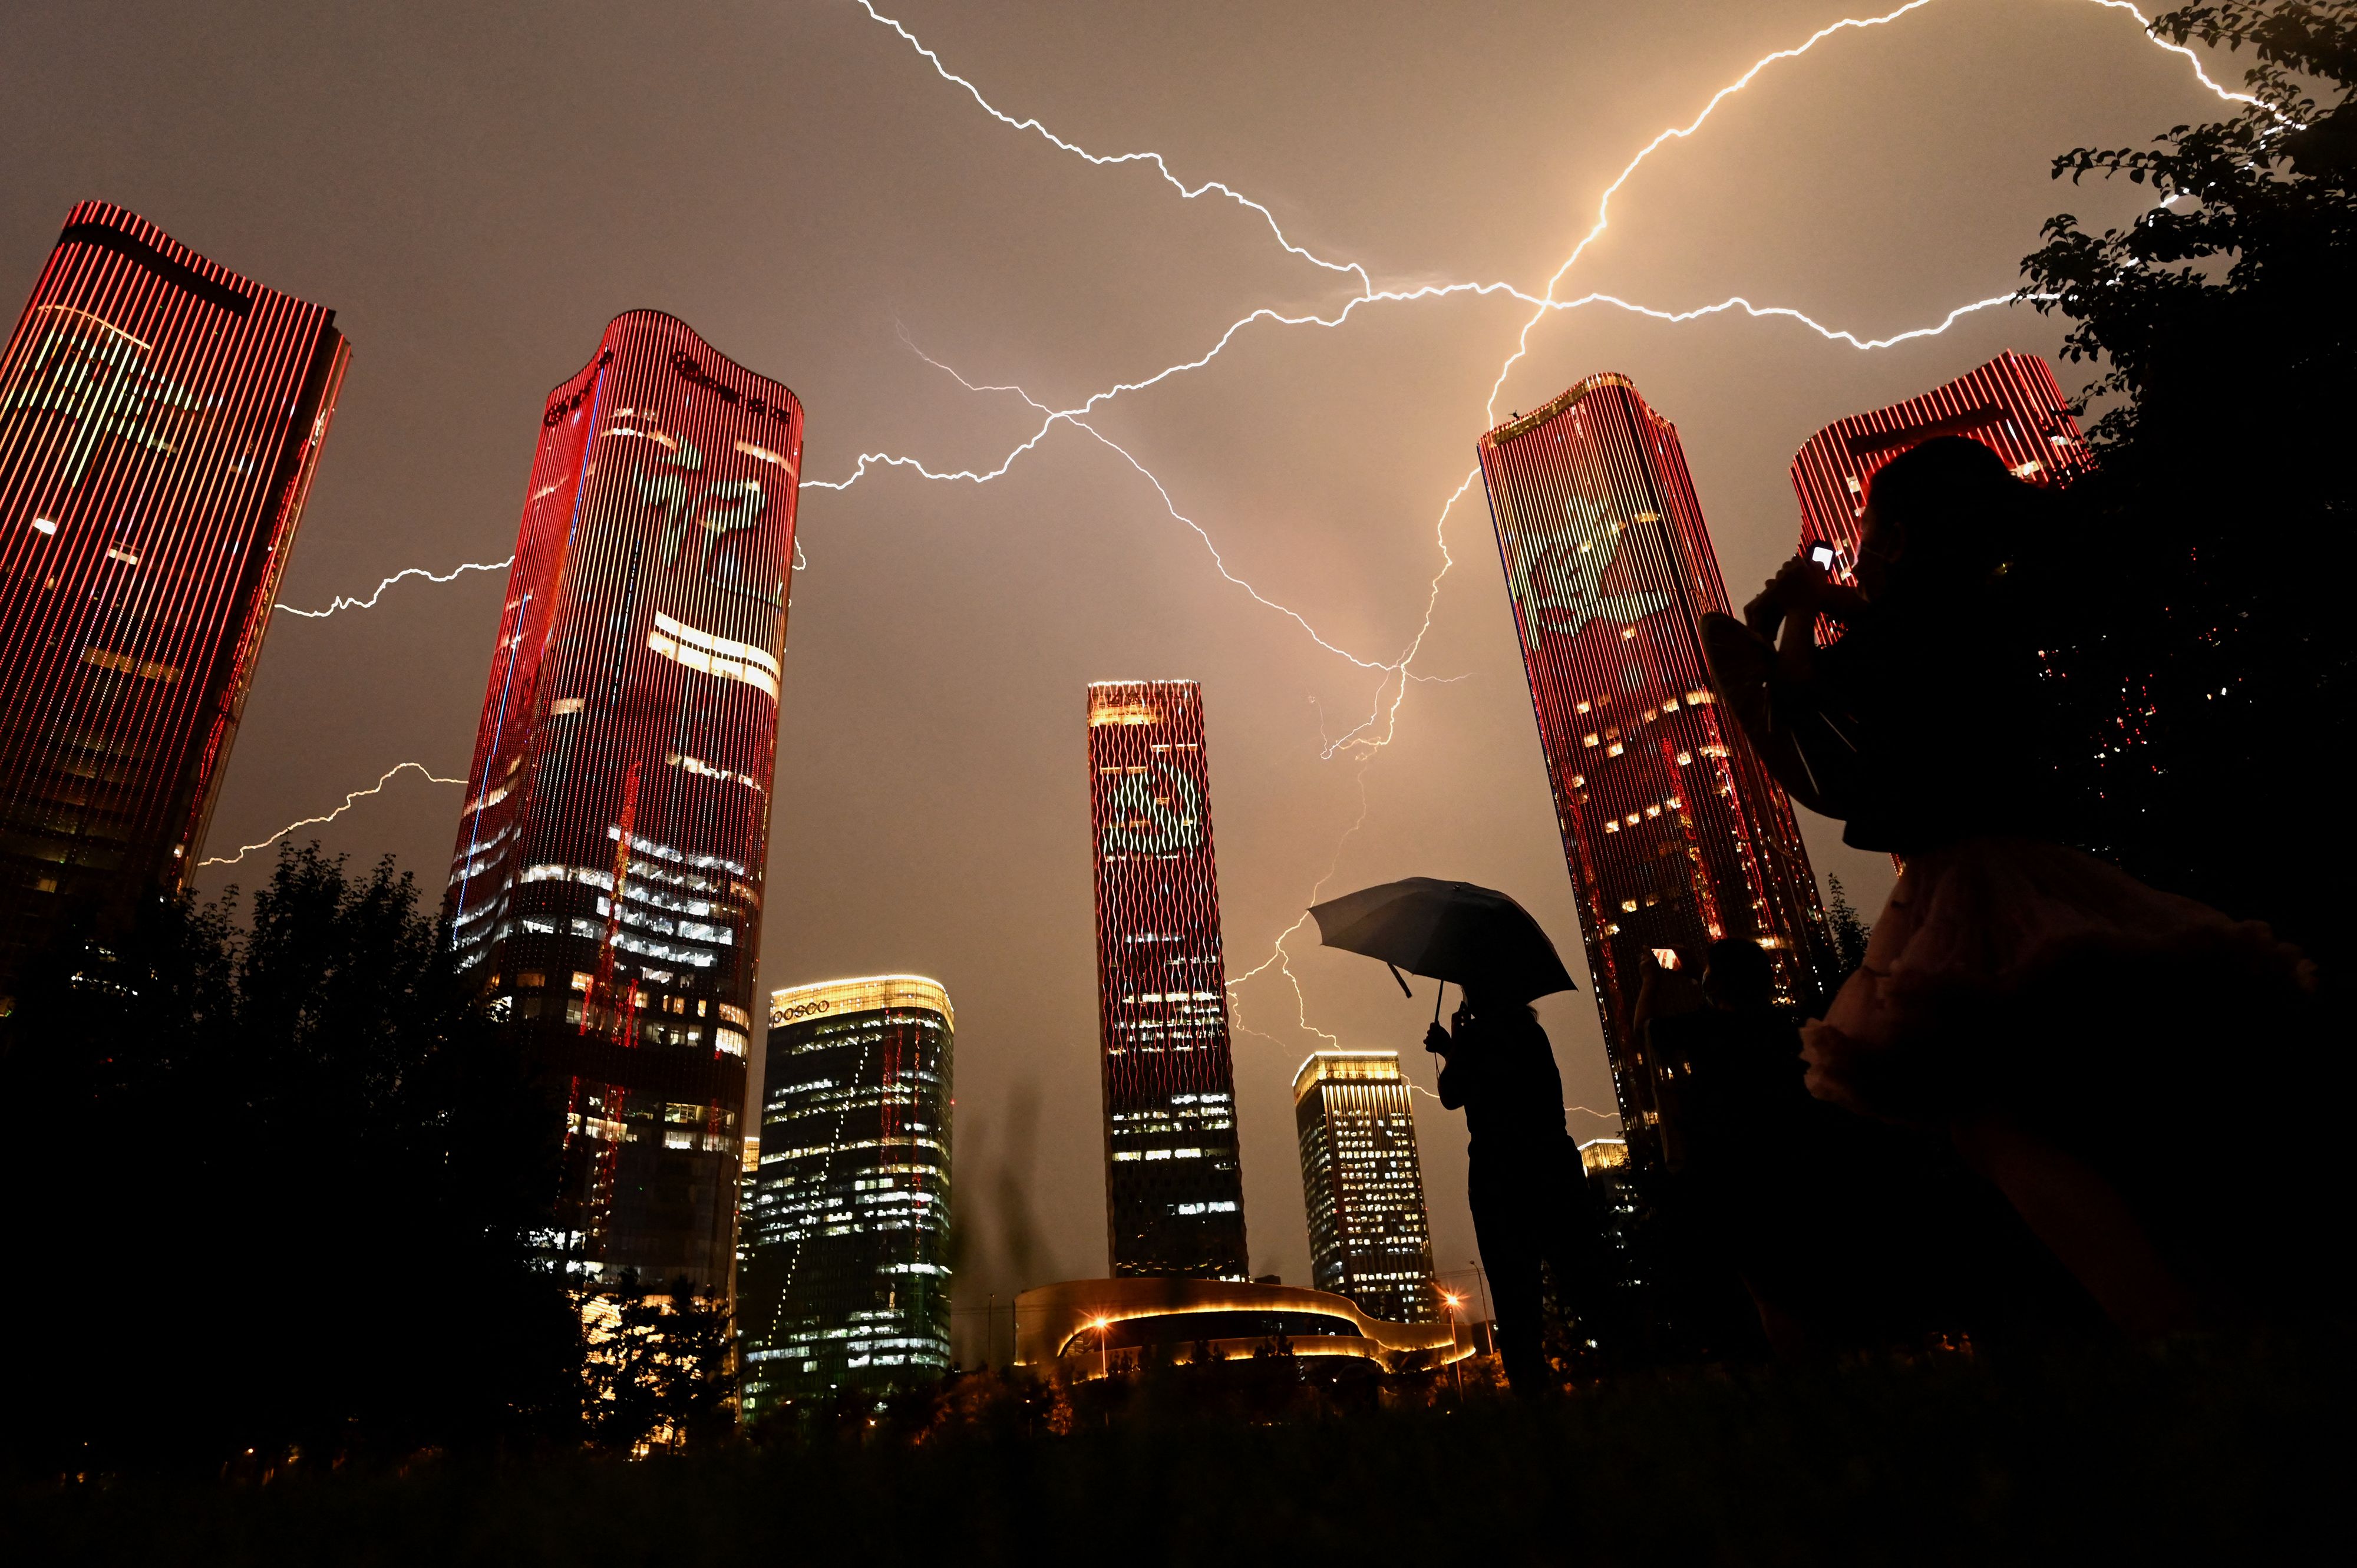 Un rayo cruza el cielo mientras la gente mira los edificios que exhiben un espectáculo de luces en la víspera del centenario del Partido Comunista de China en Beijing el 30 de junio de 2021.